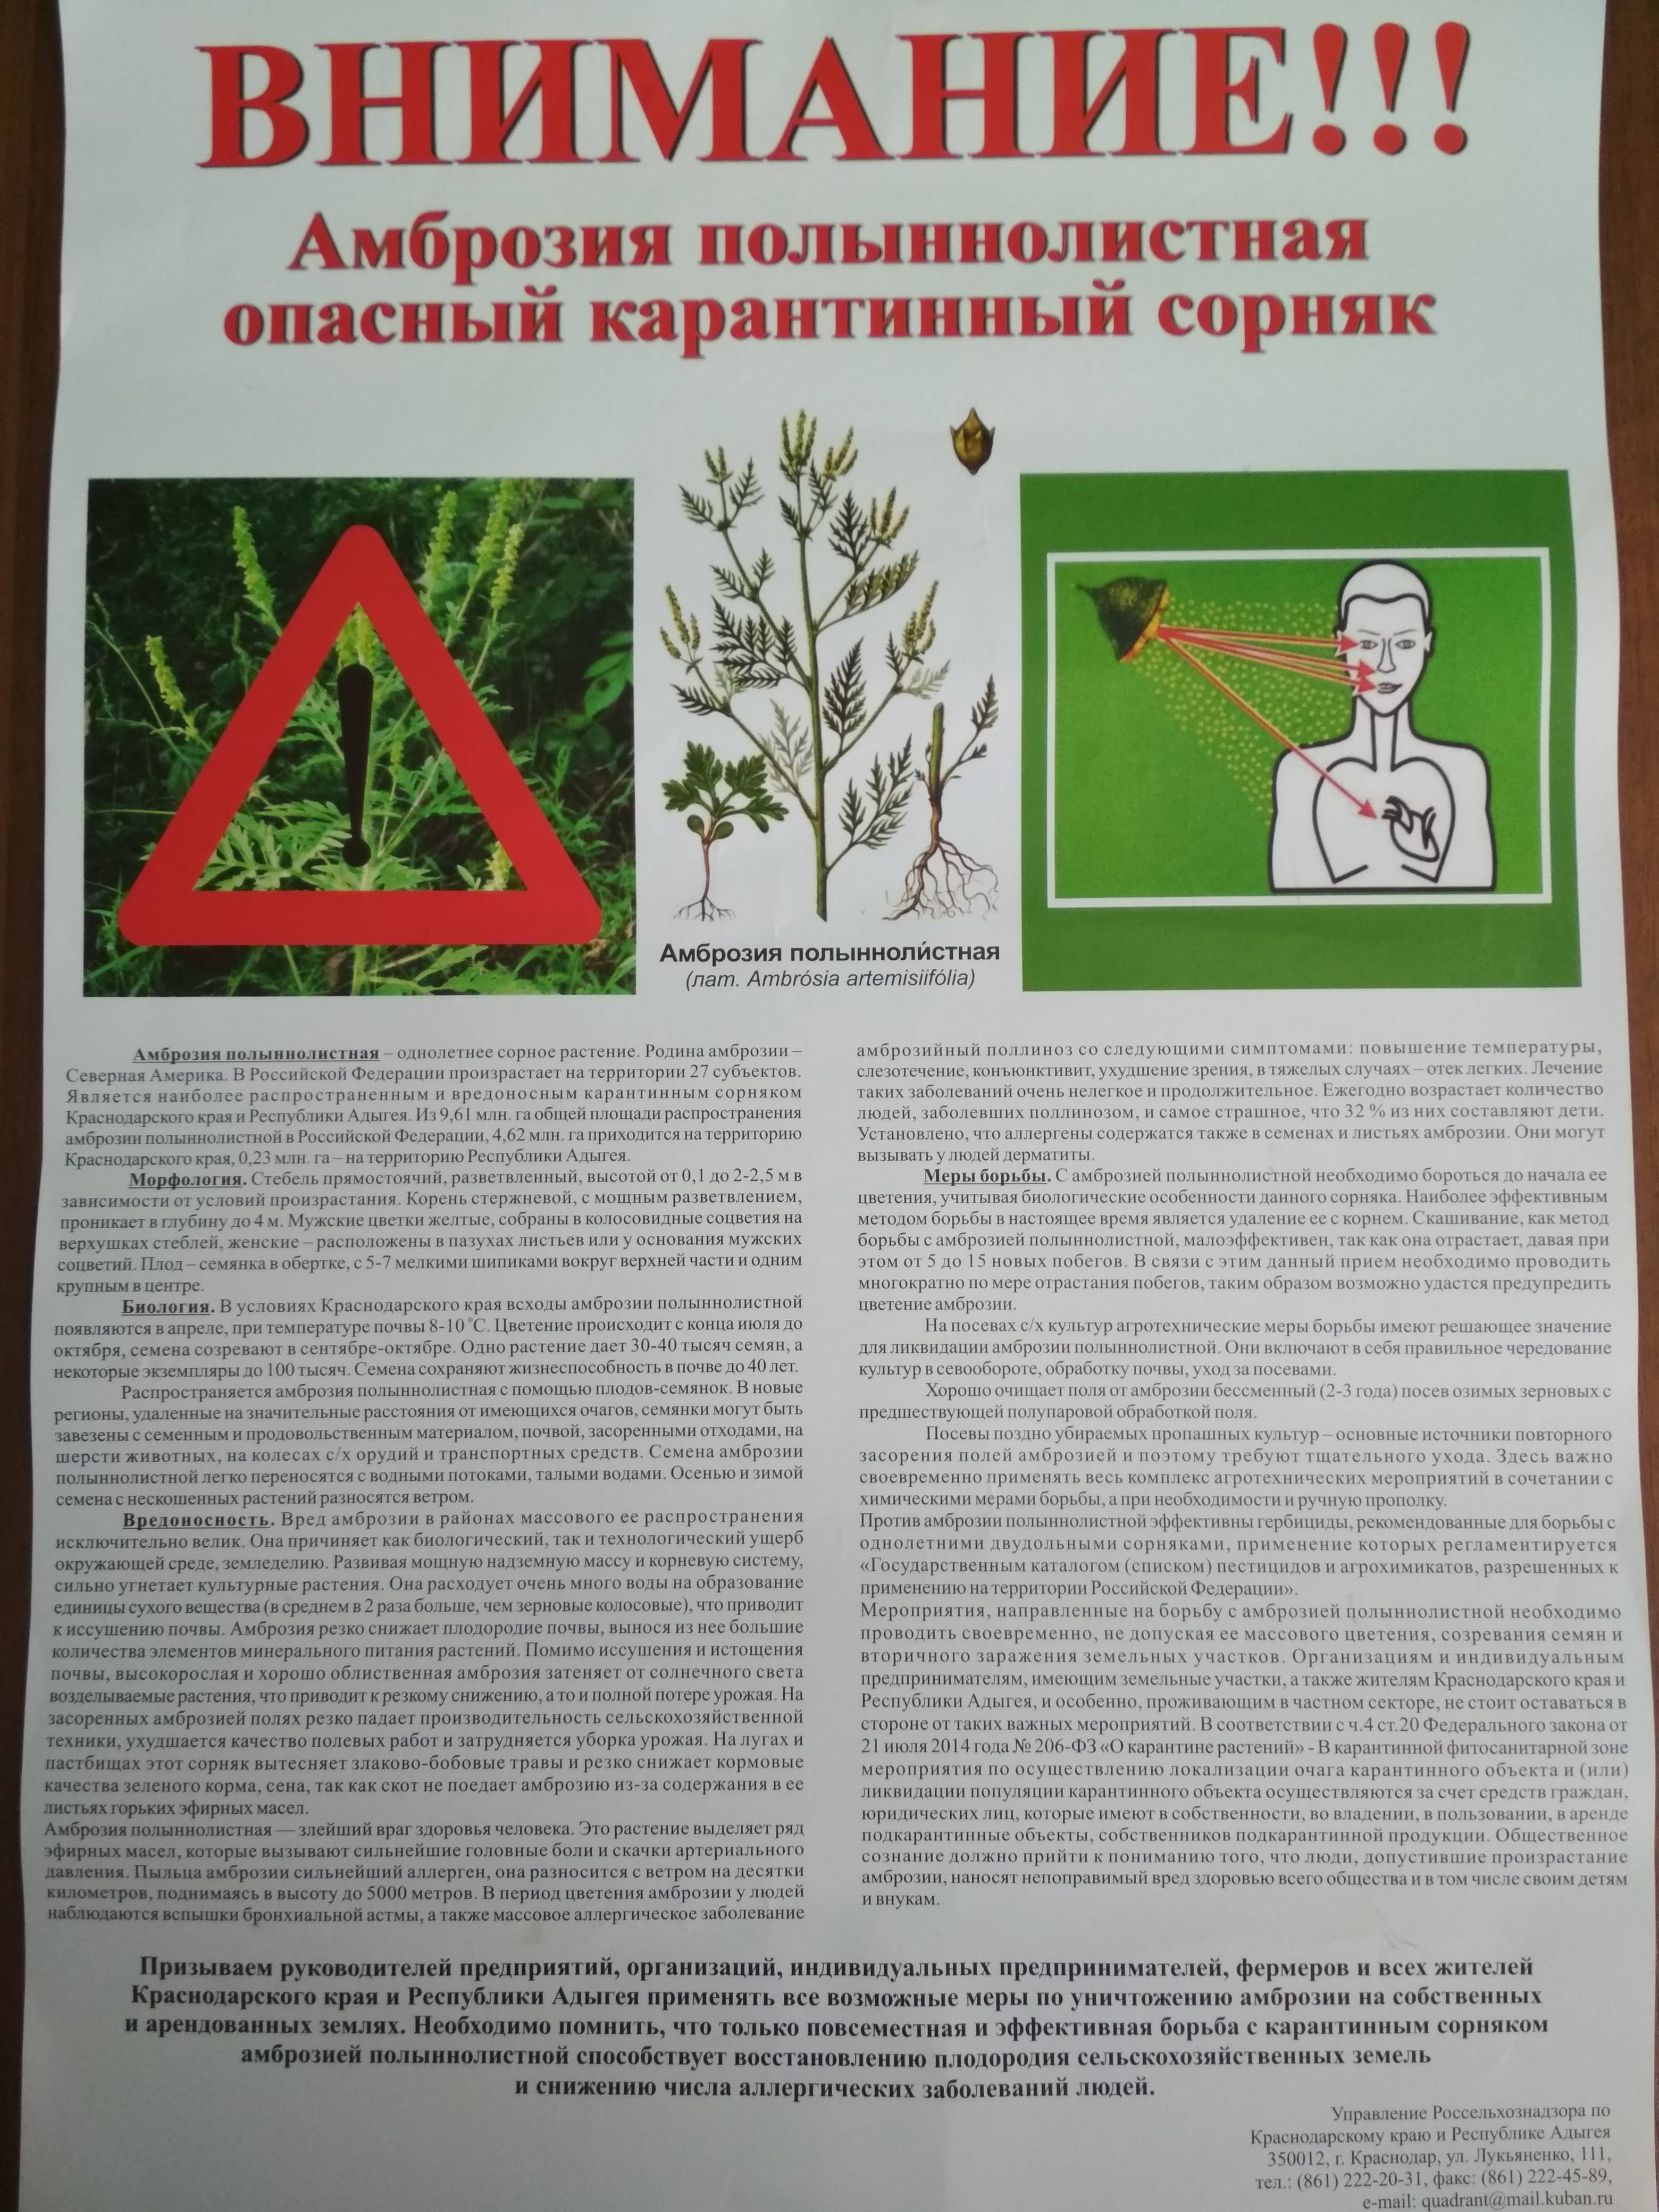 Список гербицидов против амброзии и как навсегда избавиться от сорняка